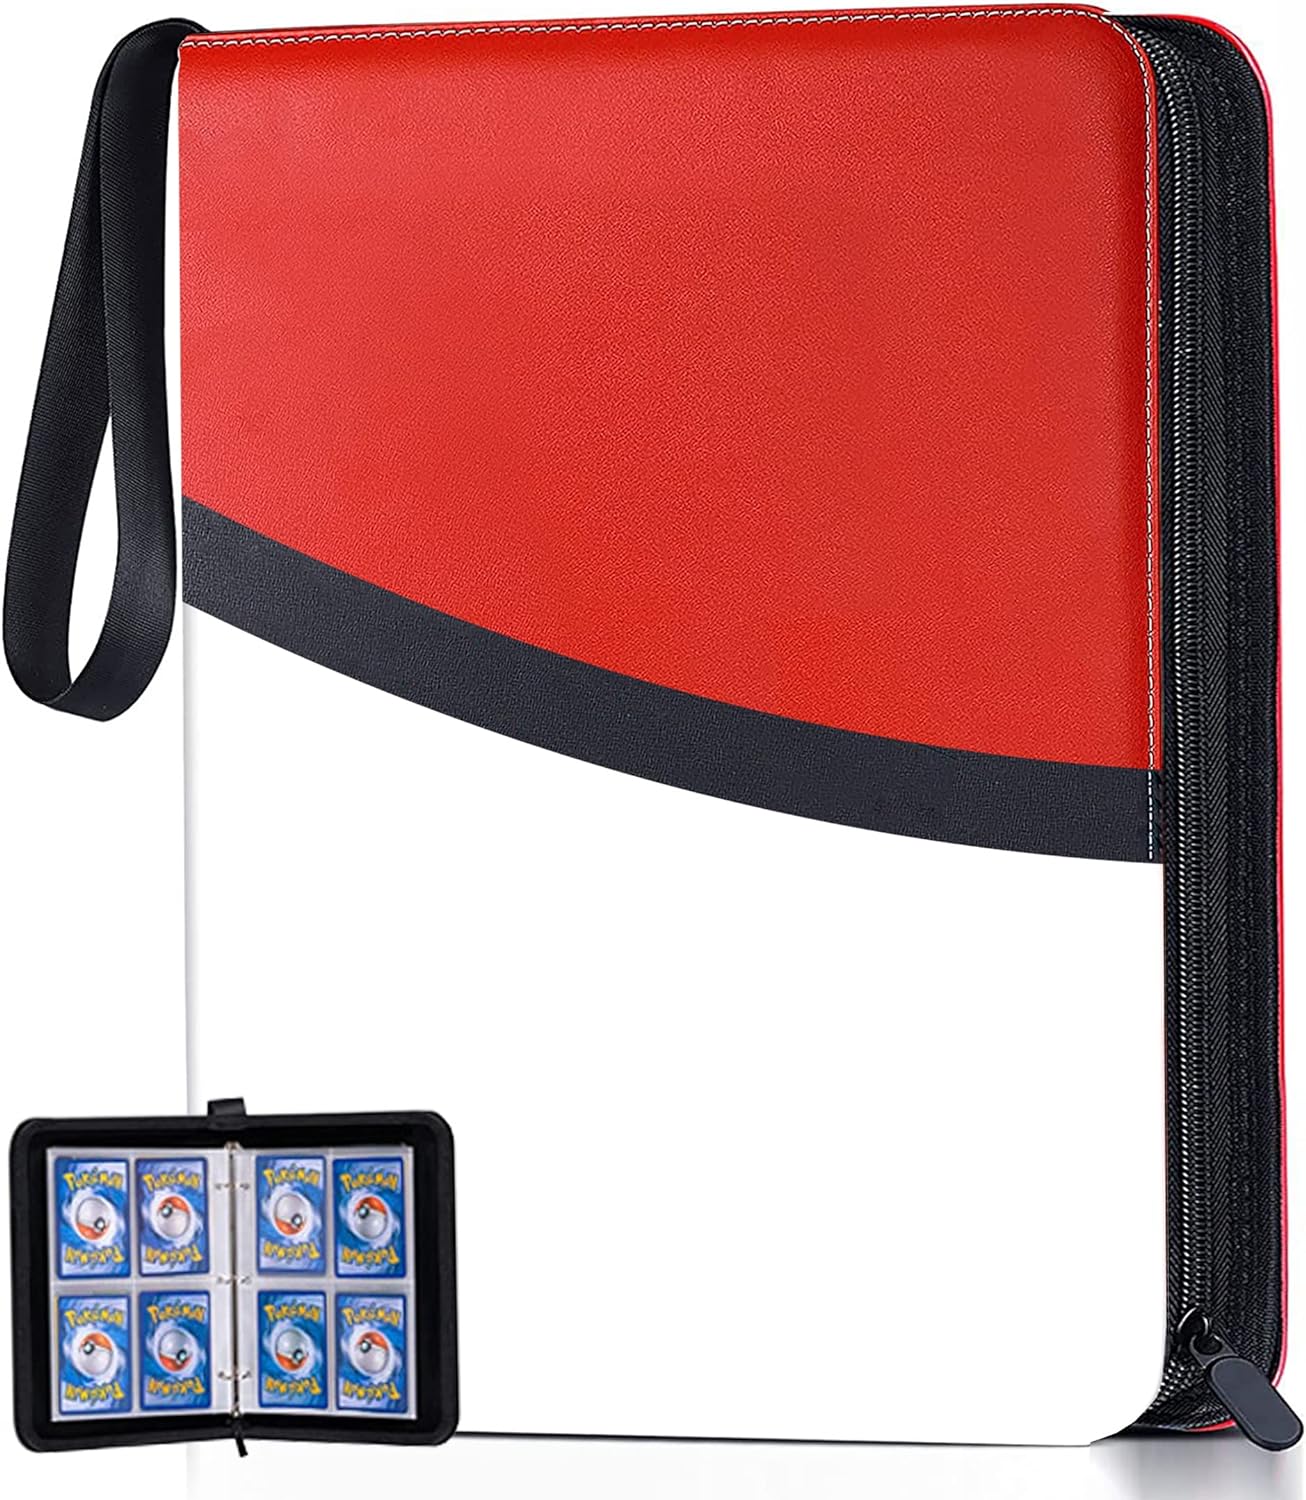 トレカ ファイル カードファイル 400枚収納可能 4ポケット PUレザー トレーディングカード ファイル カード バインダー ケース 収納 ファイル カード ケース 大容量 かわいい 防水性 耐腐食性 耐摩 (400枚収納, ホワイト+赤)